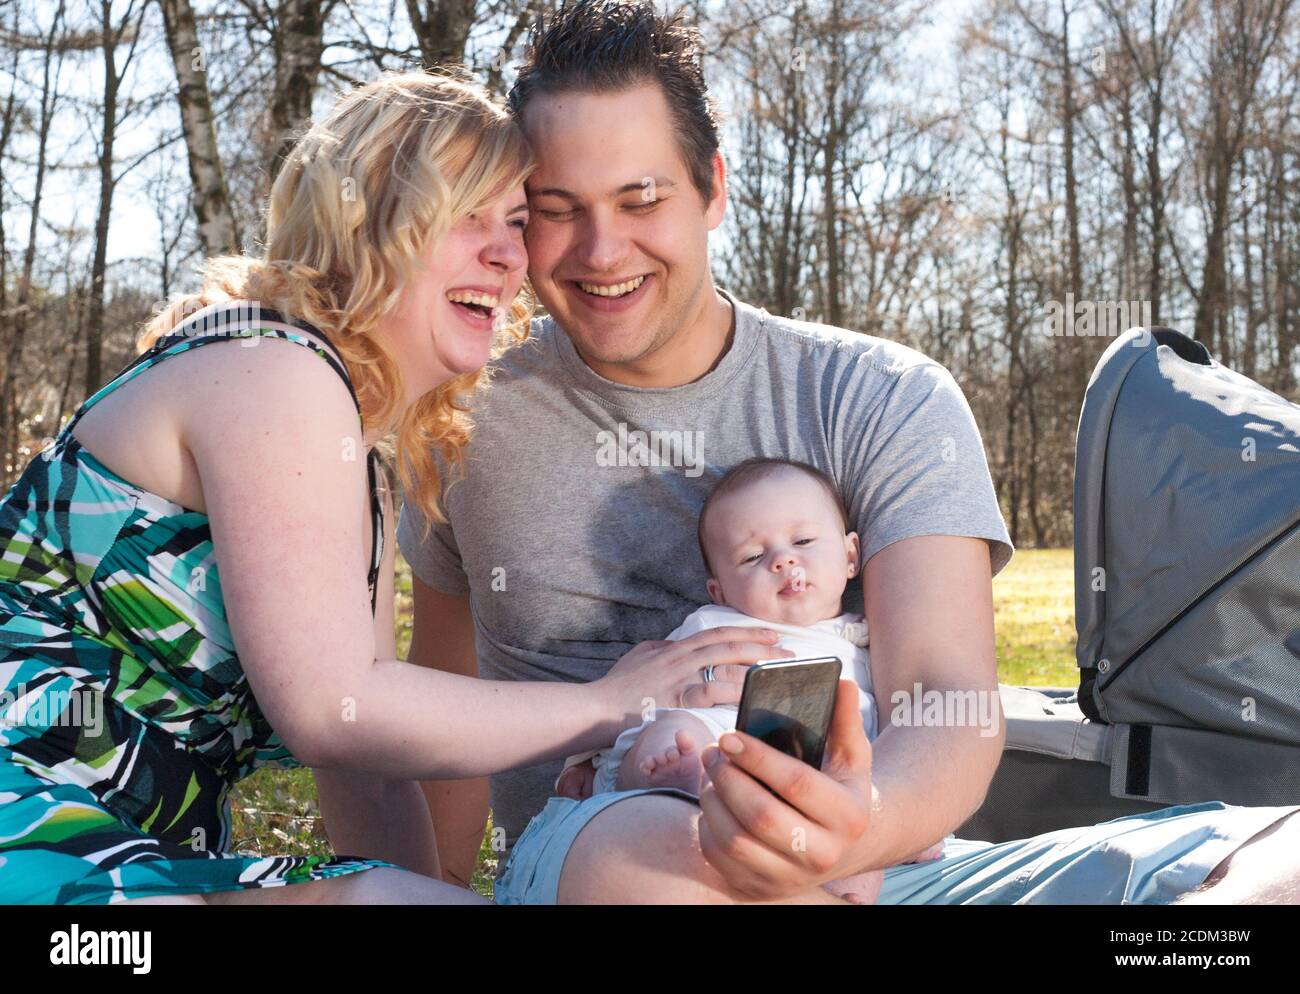 La jeune famille est souriante en prenant un selfie Banque D'Images